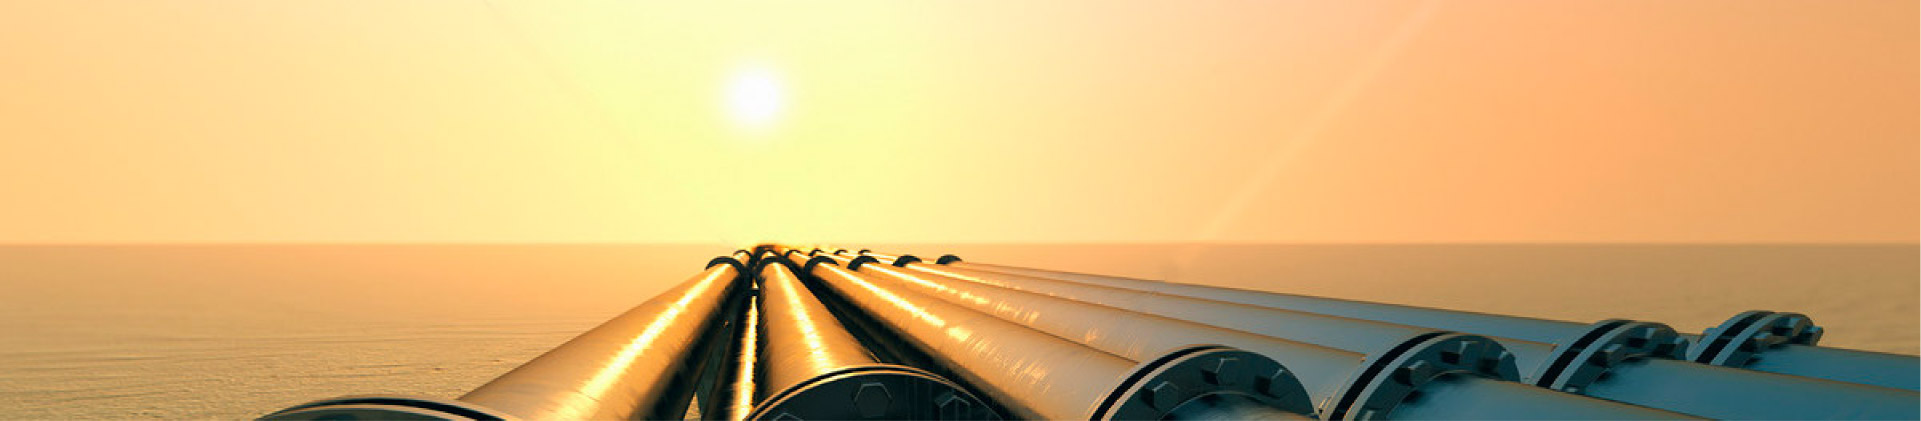 CNPC：天然ガスは中国 - ロシアエネルギー協力の新たな成長点になる